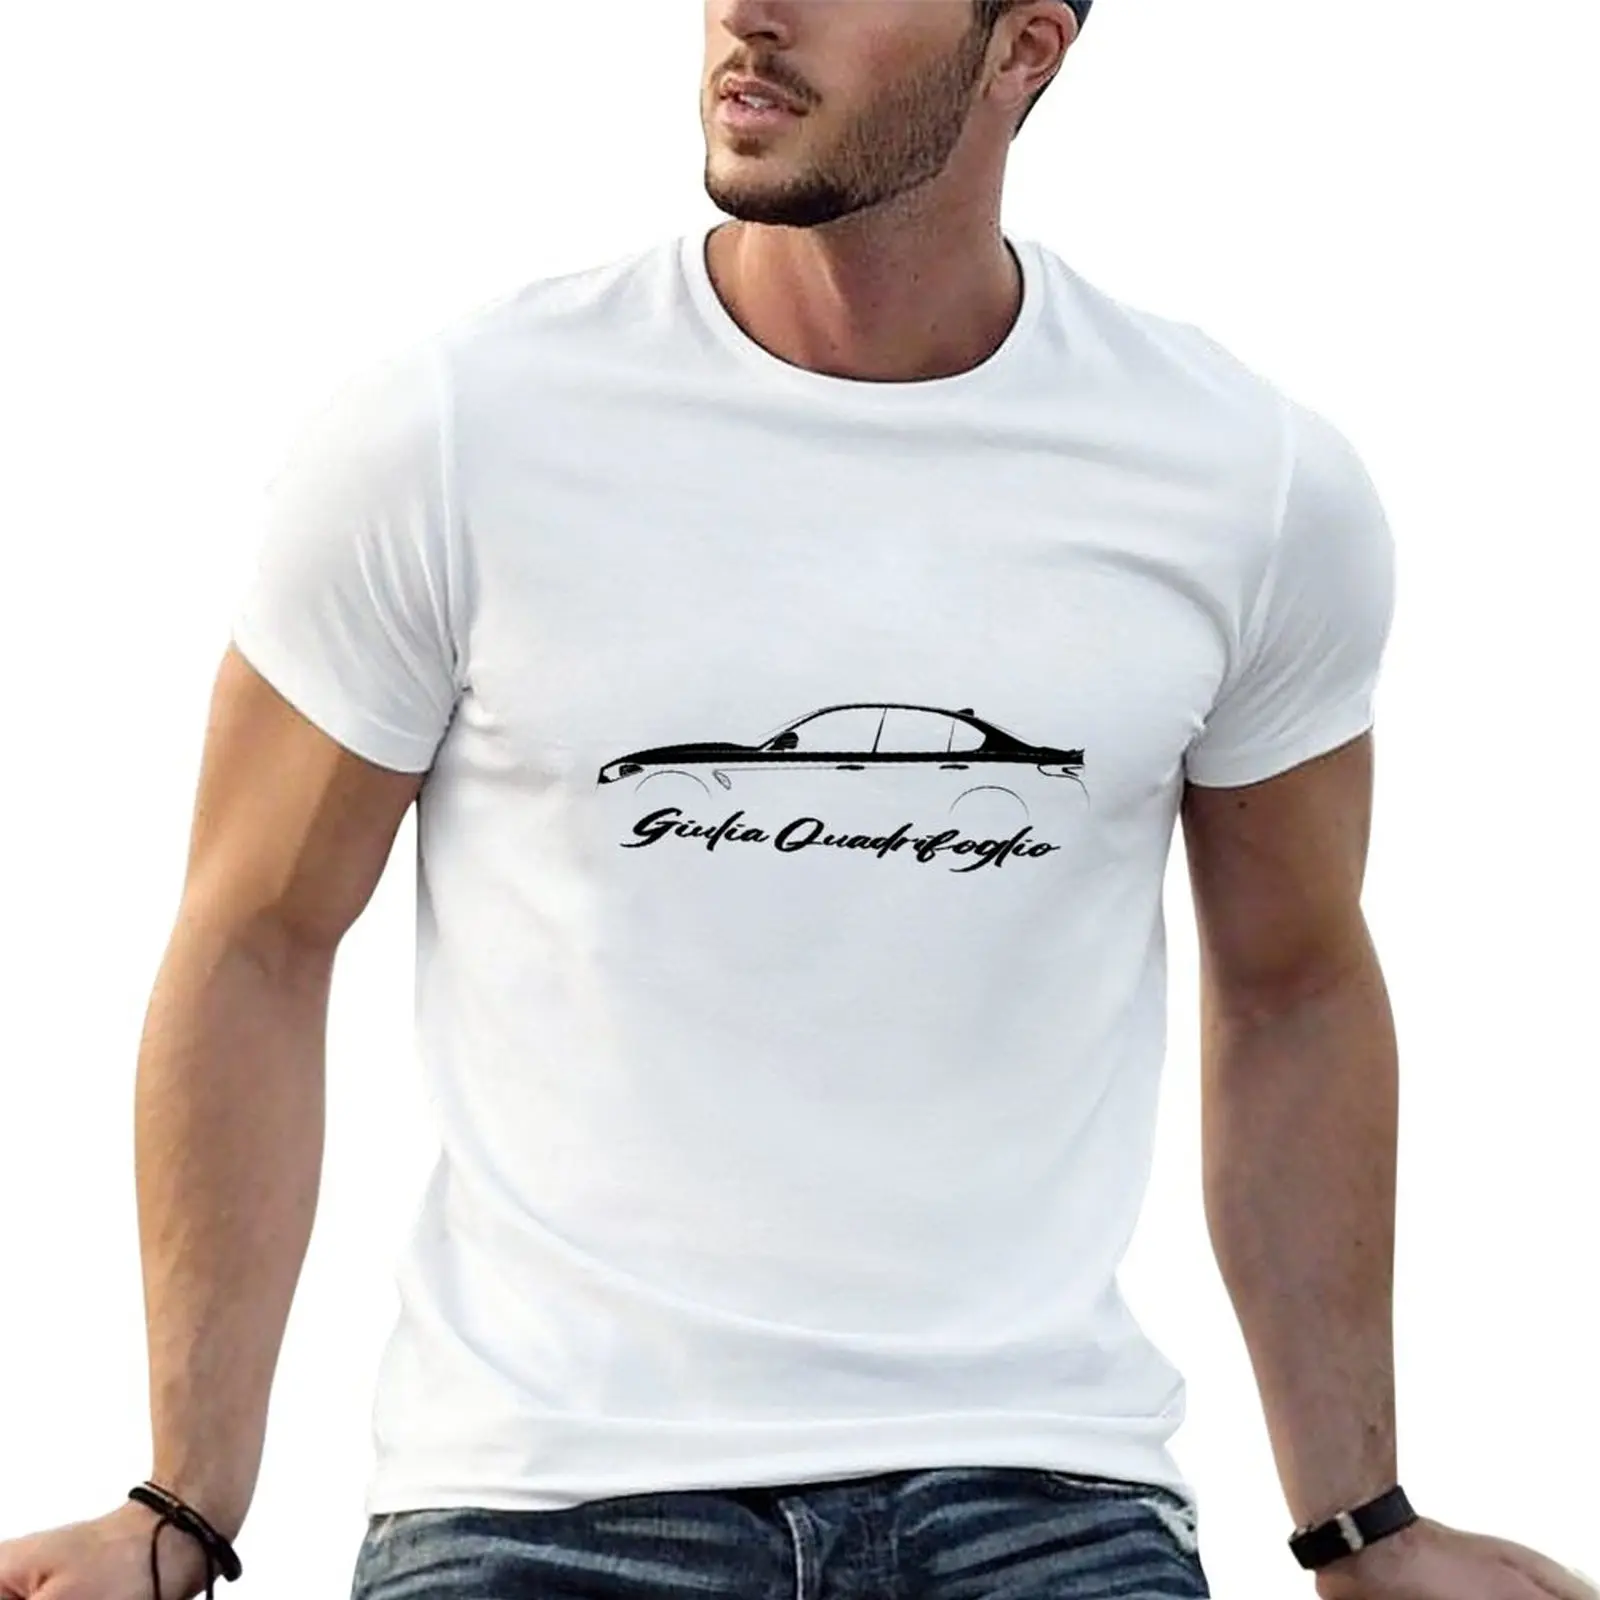 

New Giulia Quadrifoglio Black Design T-Shirt T-shirt for a boy black t shirts mens t shirt graphic